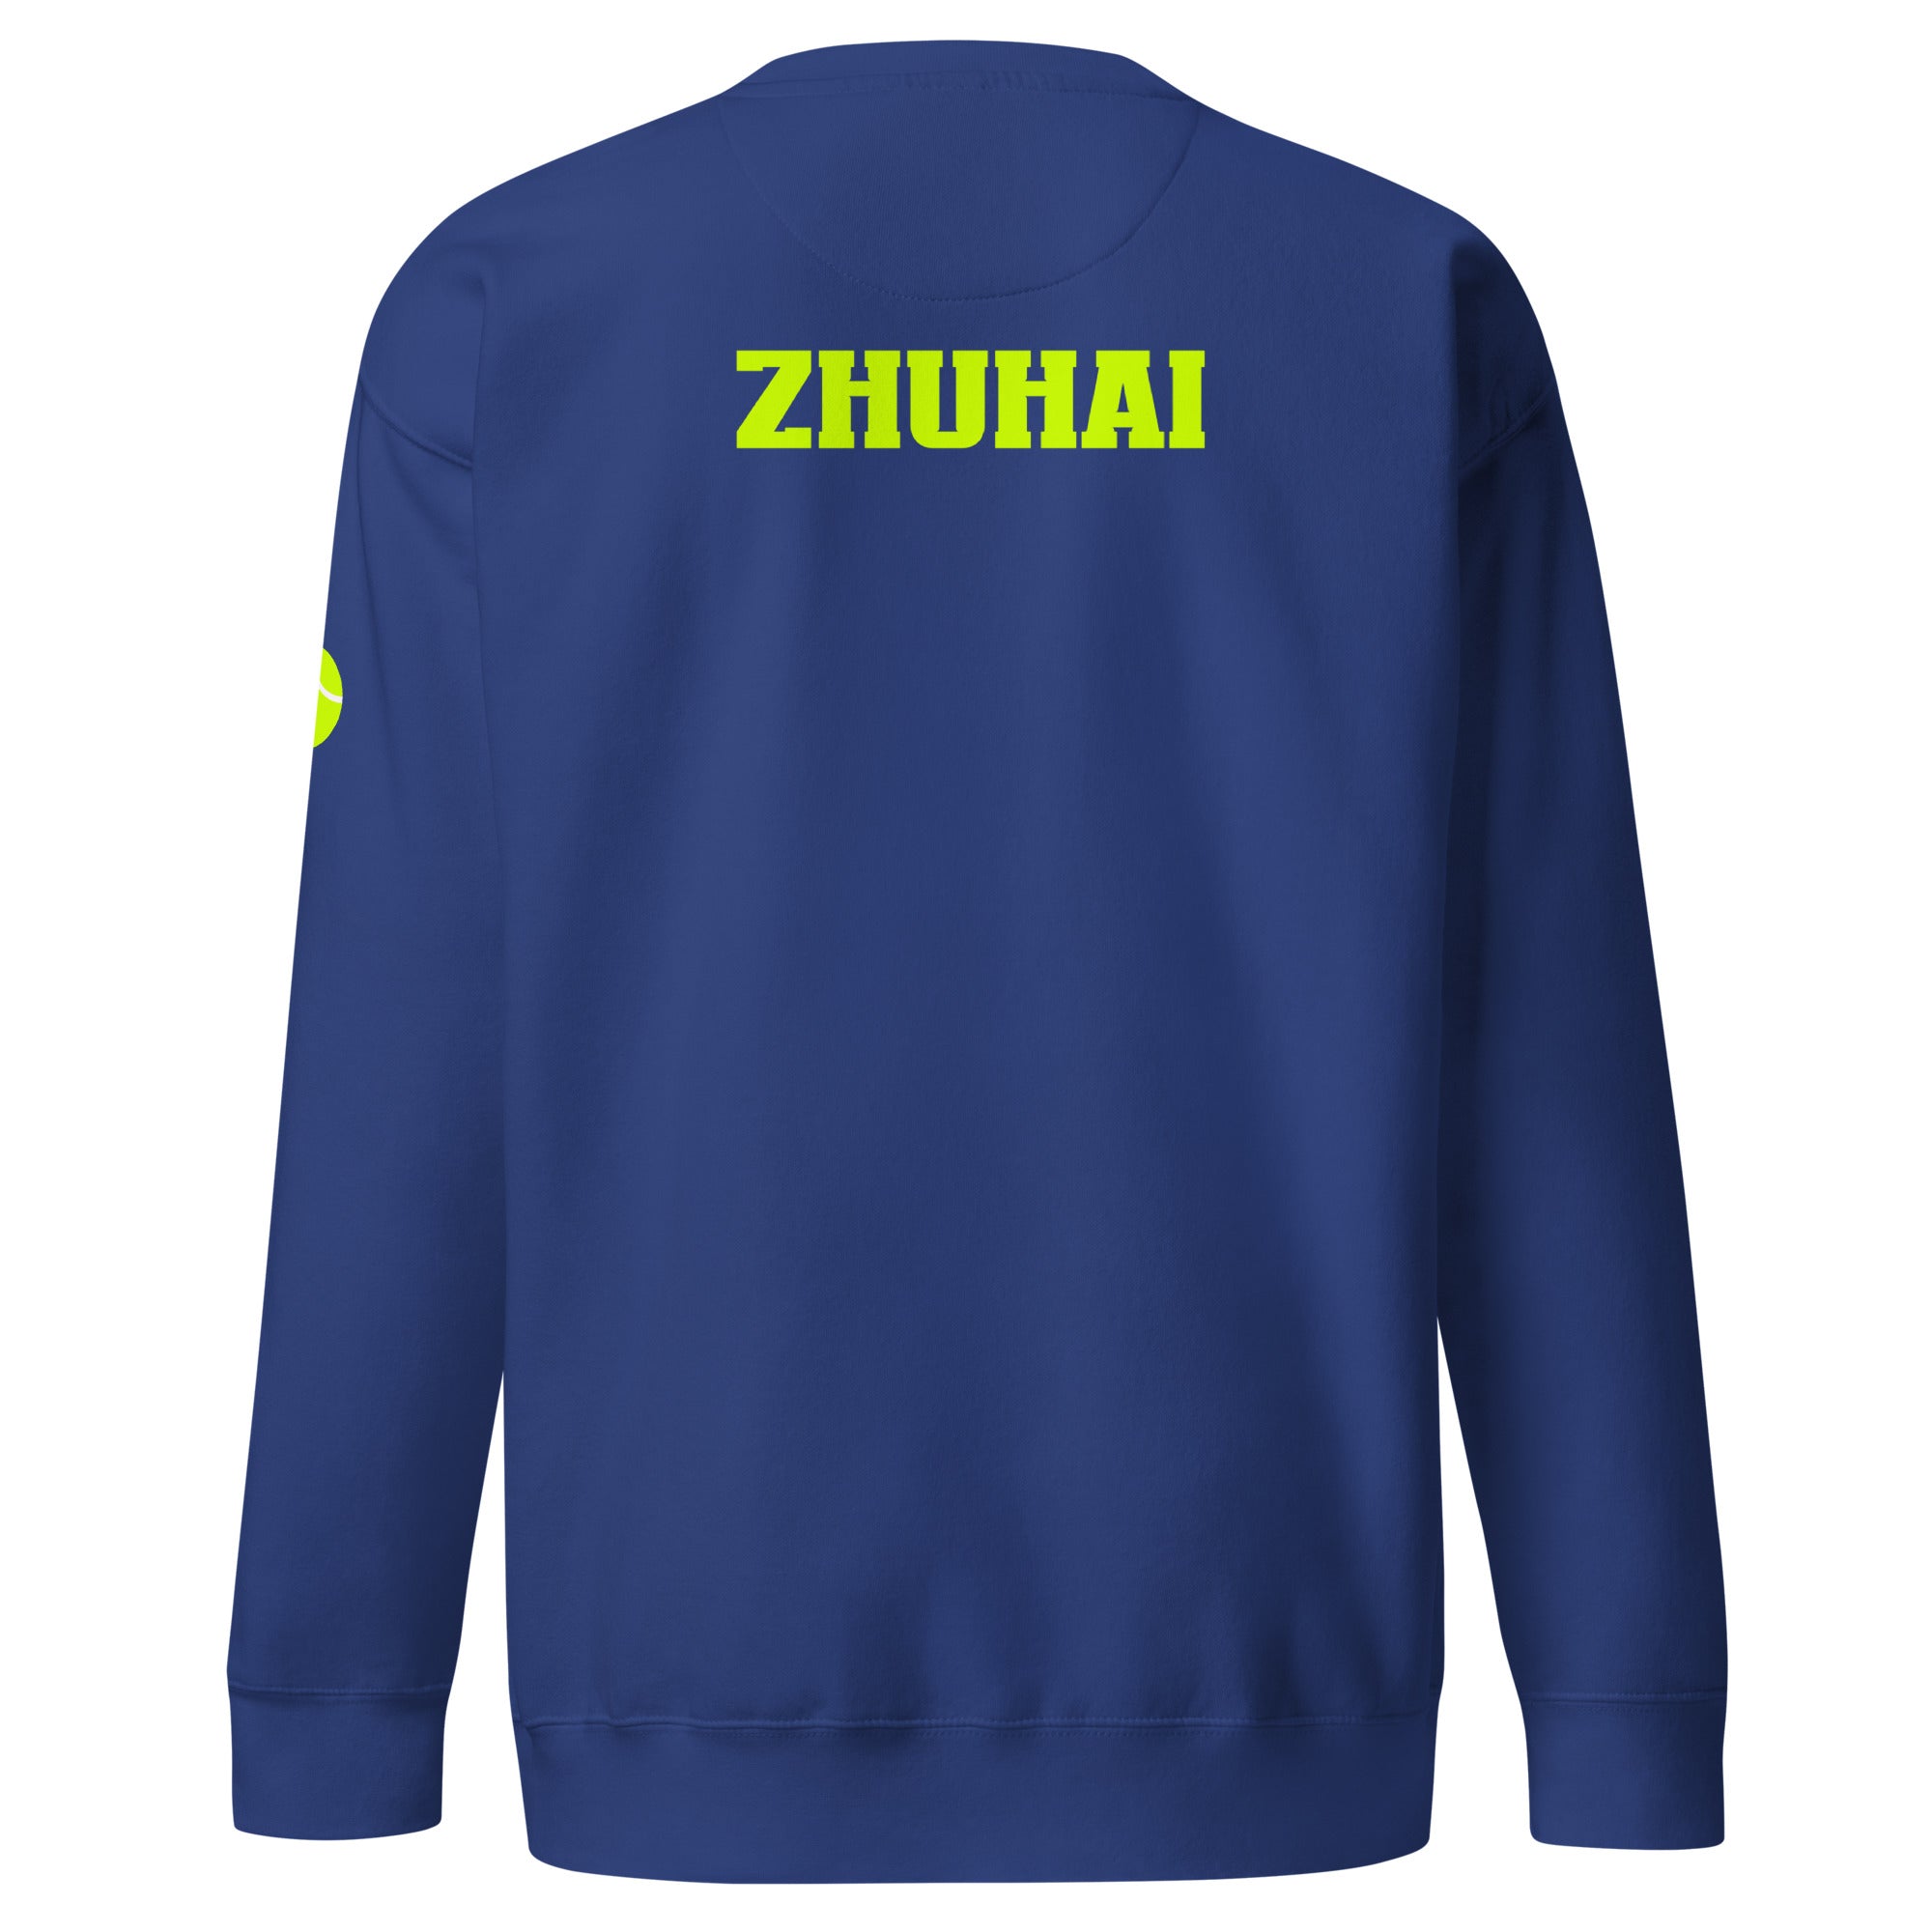 Unisex Premium Sweatshirt - Tennis Masters Zhuhai - GRAPHIC T-SHIRTS